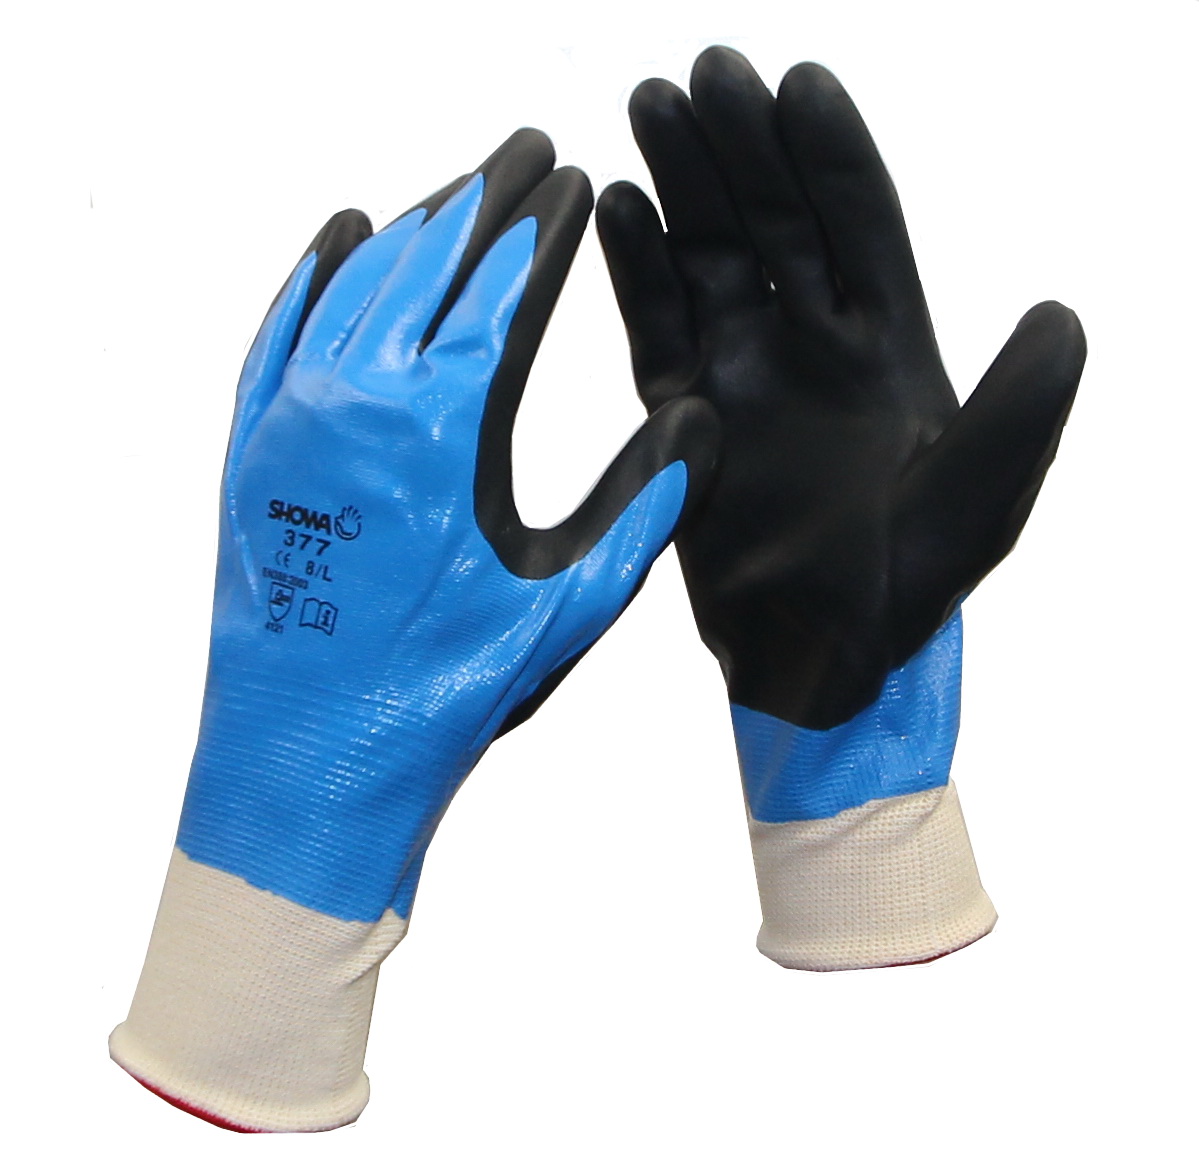 GÖRTE U. TIEDEMANN GMBH CO. KG - ALTENHO Handschuhe Nitrile Foam Grip 377 Gr. 8 vollständig getaucht in Tüte